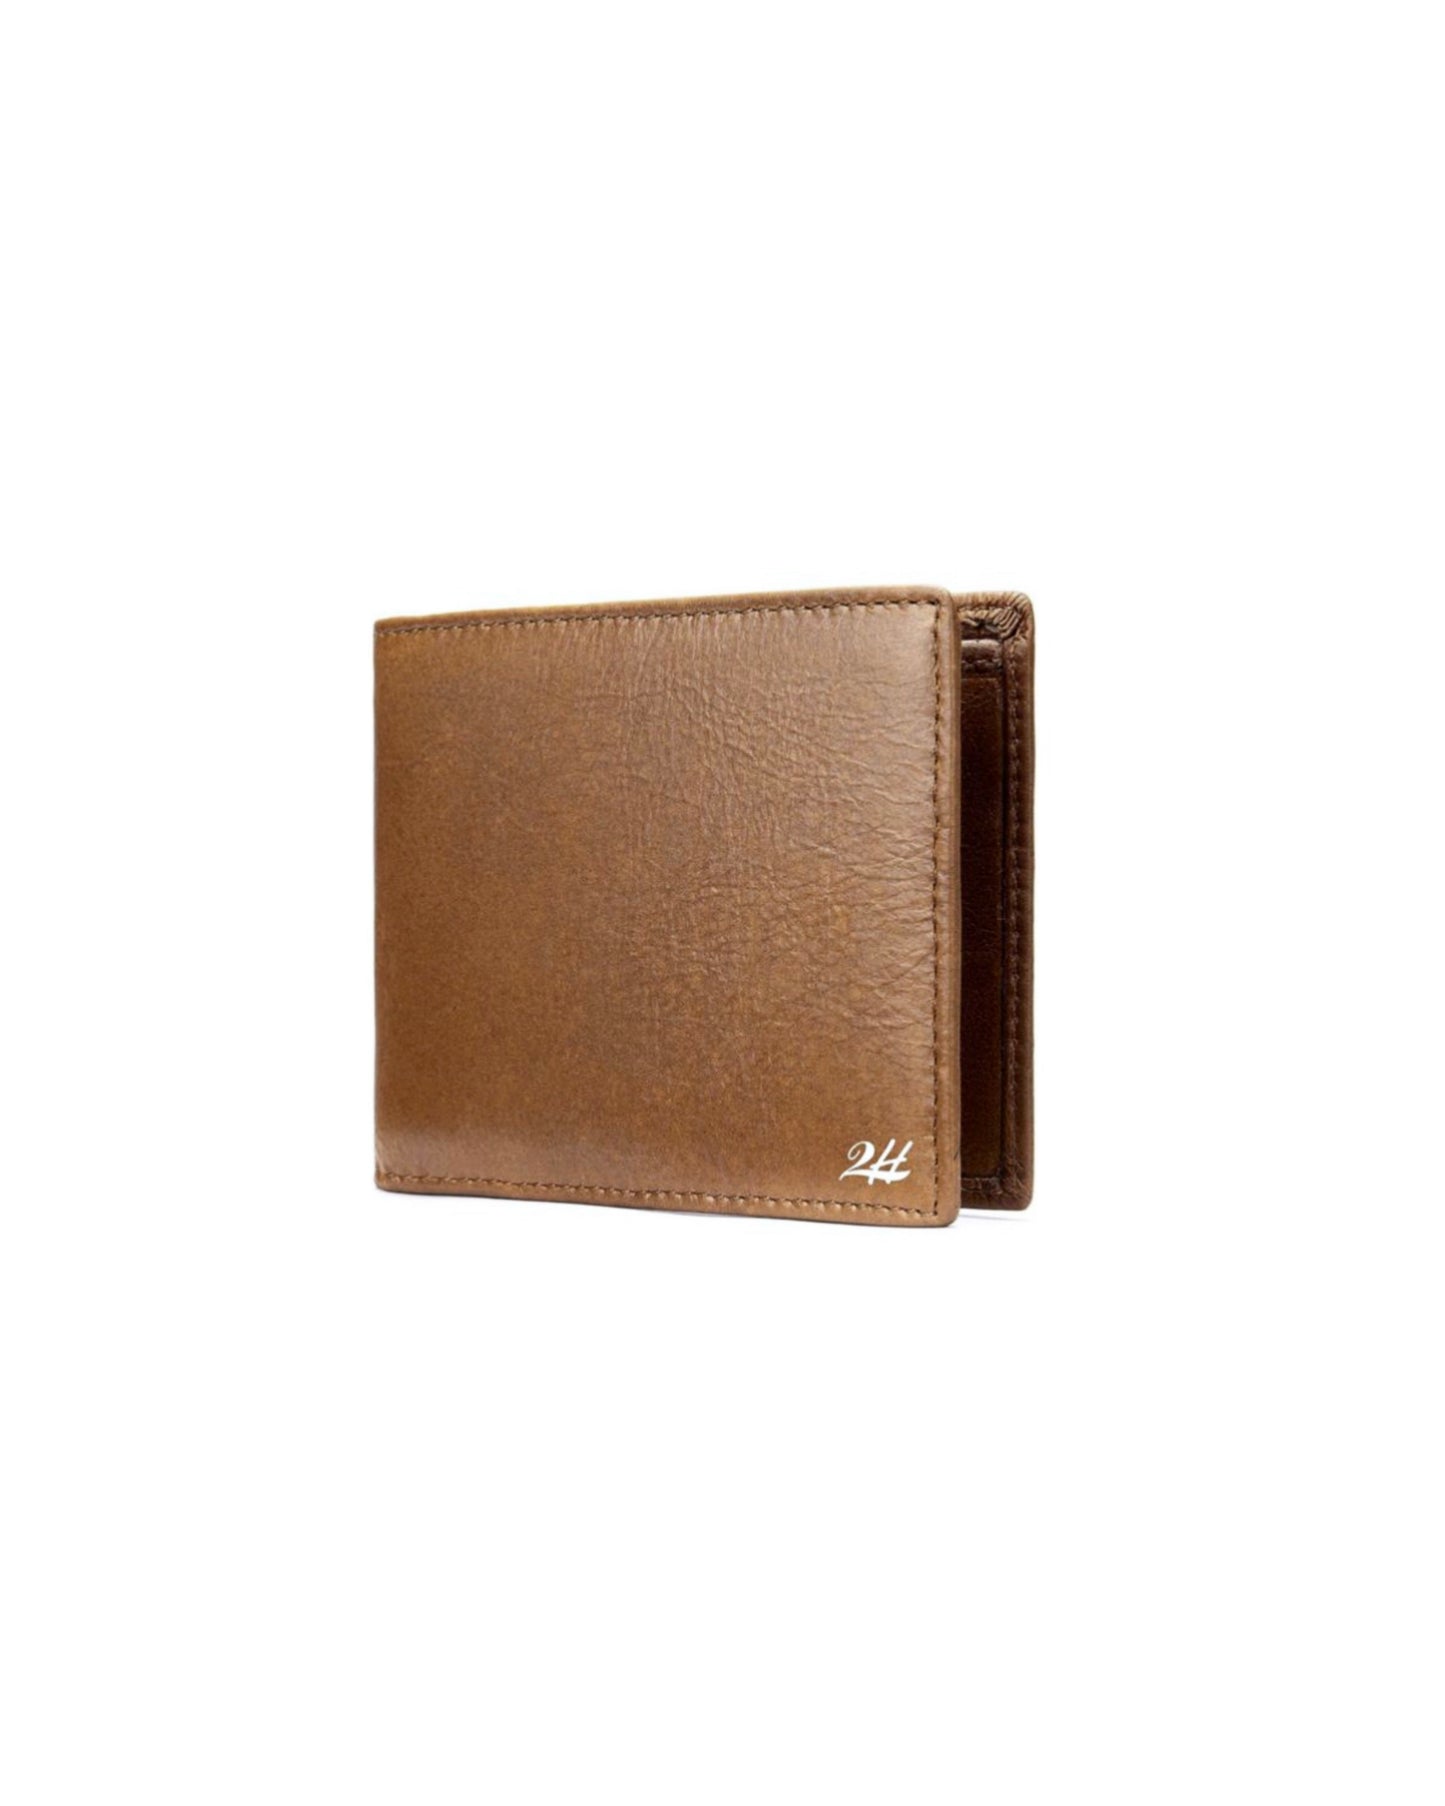 2H Havan Genuine Leather wallet